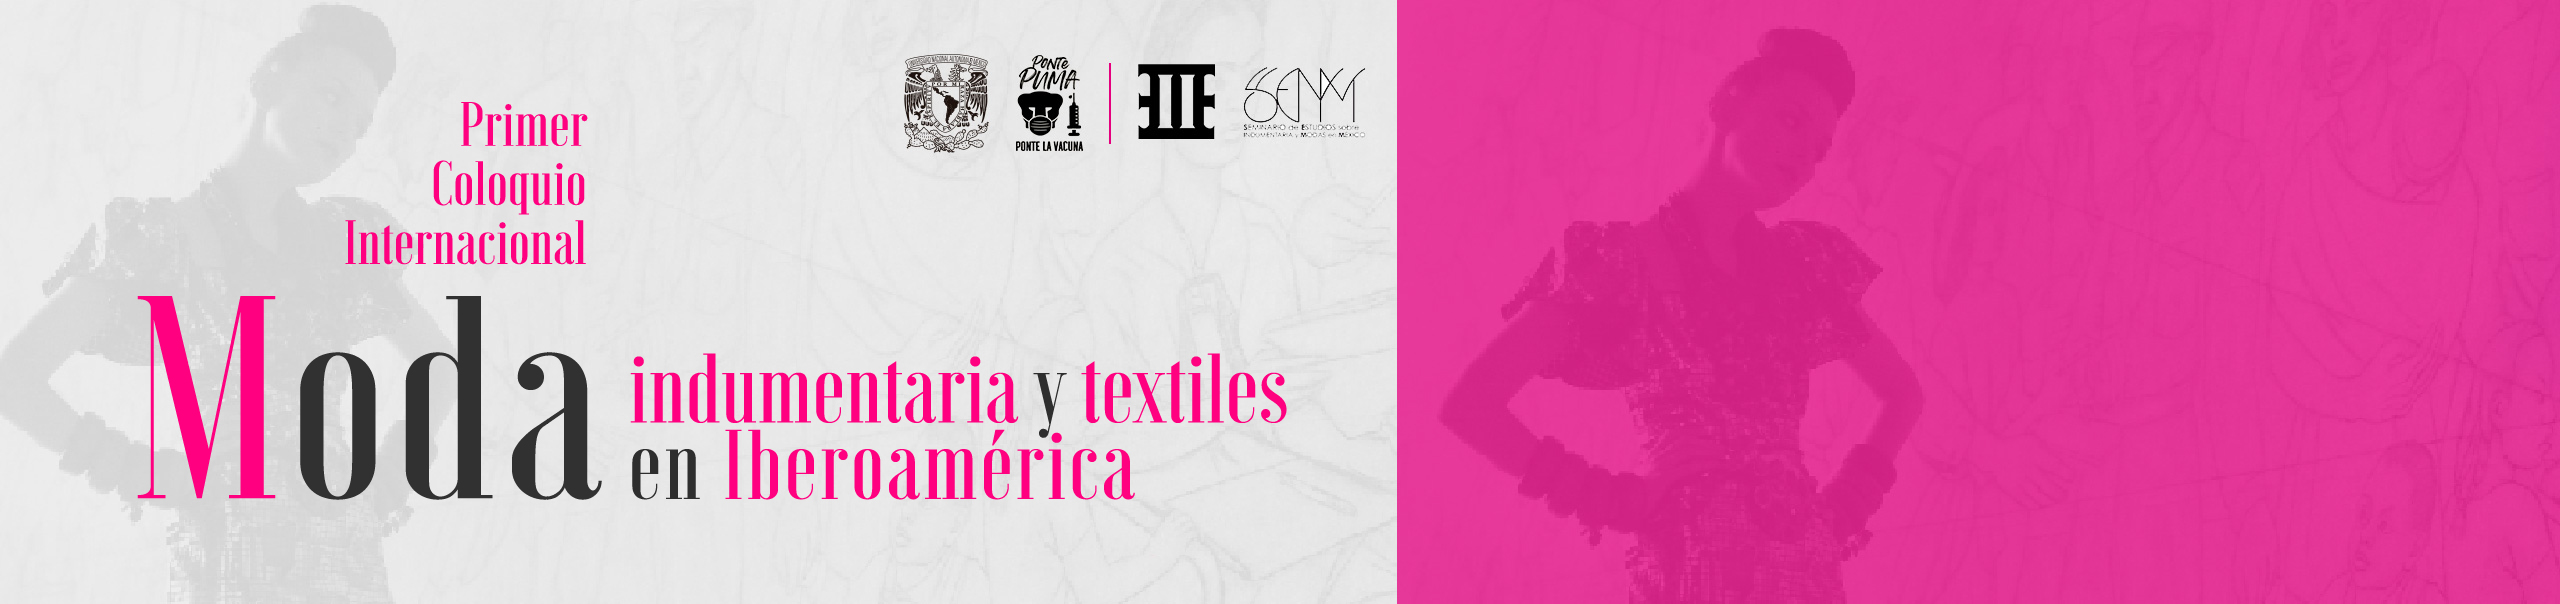 Primer Coloquio internacional sobre moda, indumentaria y textiles en Iberoamérica